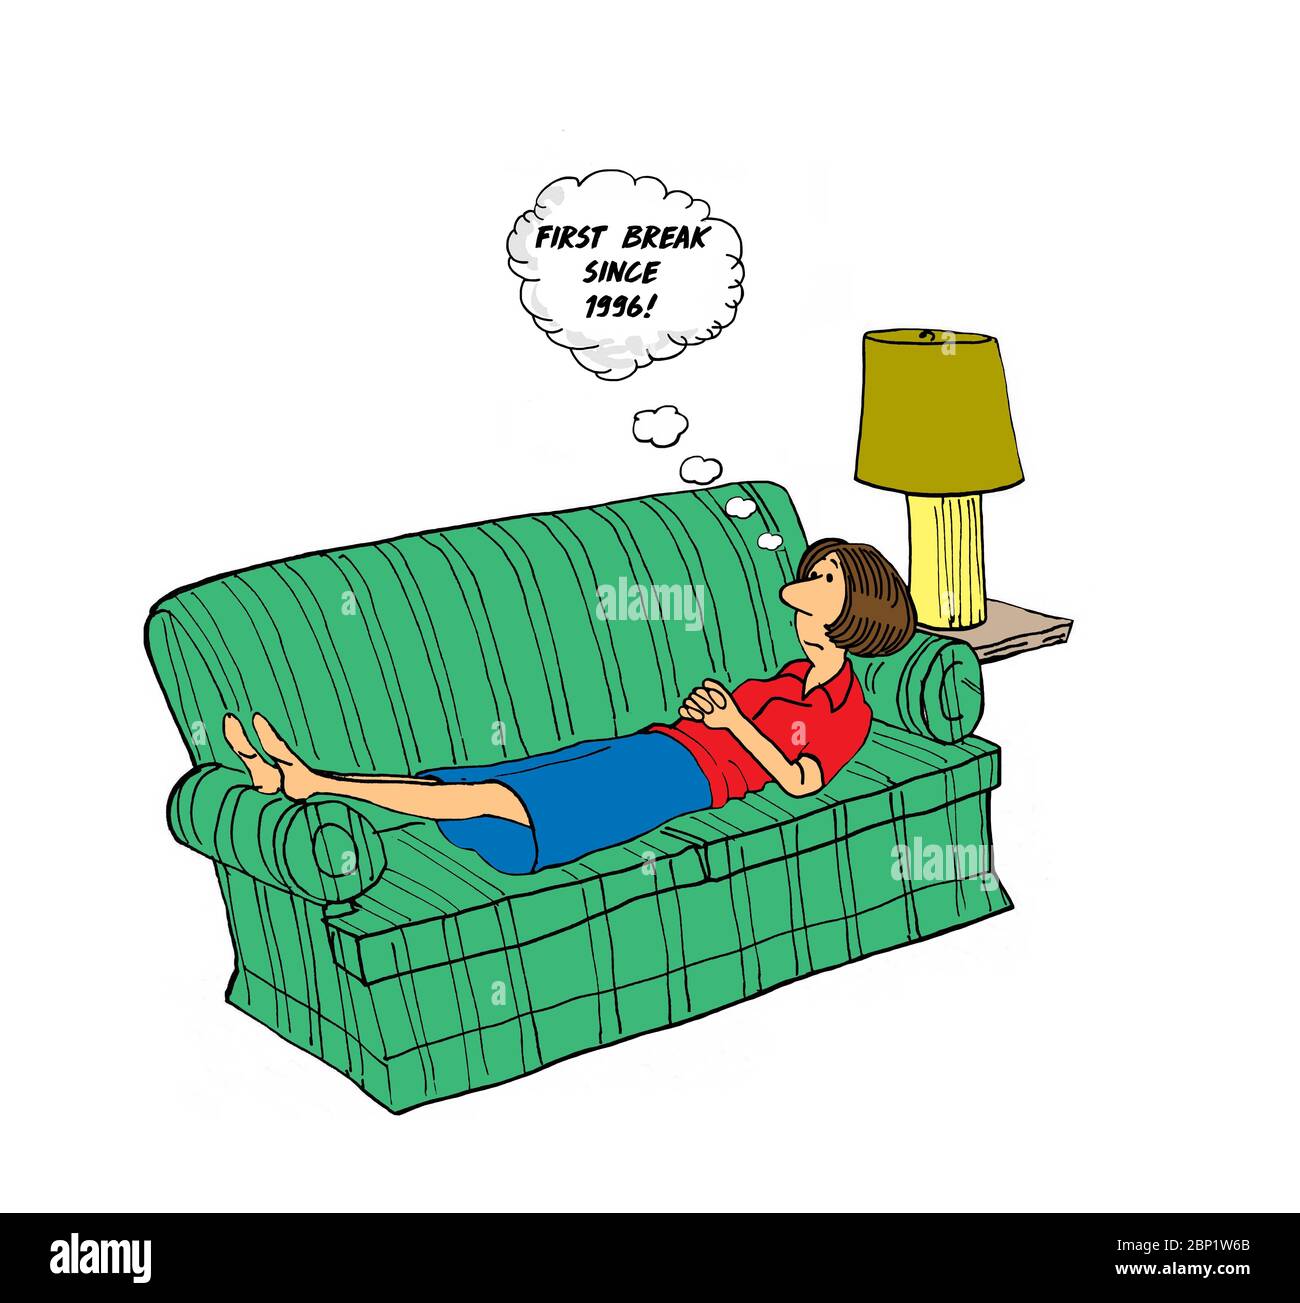 Farbzeichentrick einer Frau mittleren Alters, die sich auf einer Couch ausruht und denkt, dass dies das erste Mal ist, dass sie sich seit 2008 ausruhen kann. Stockfoto